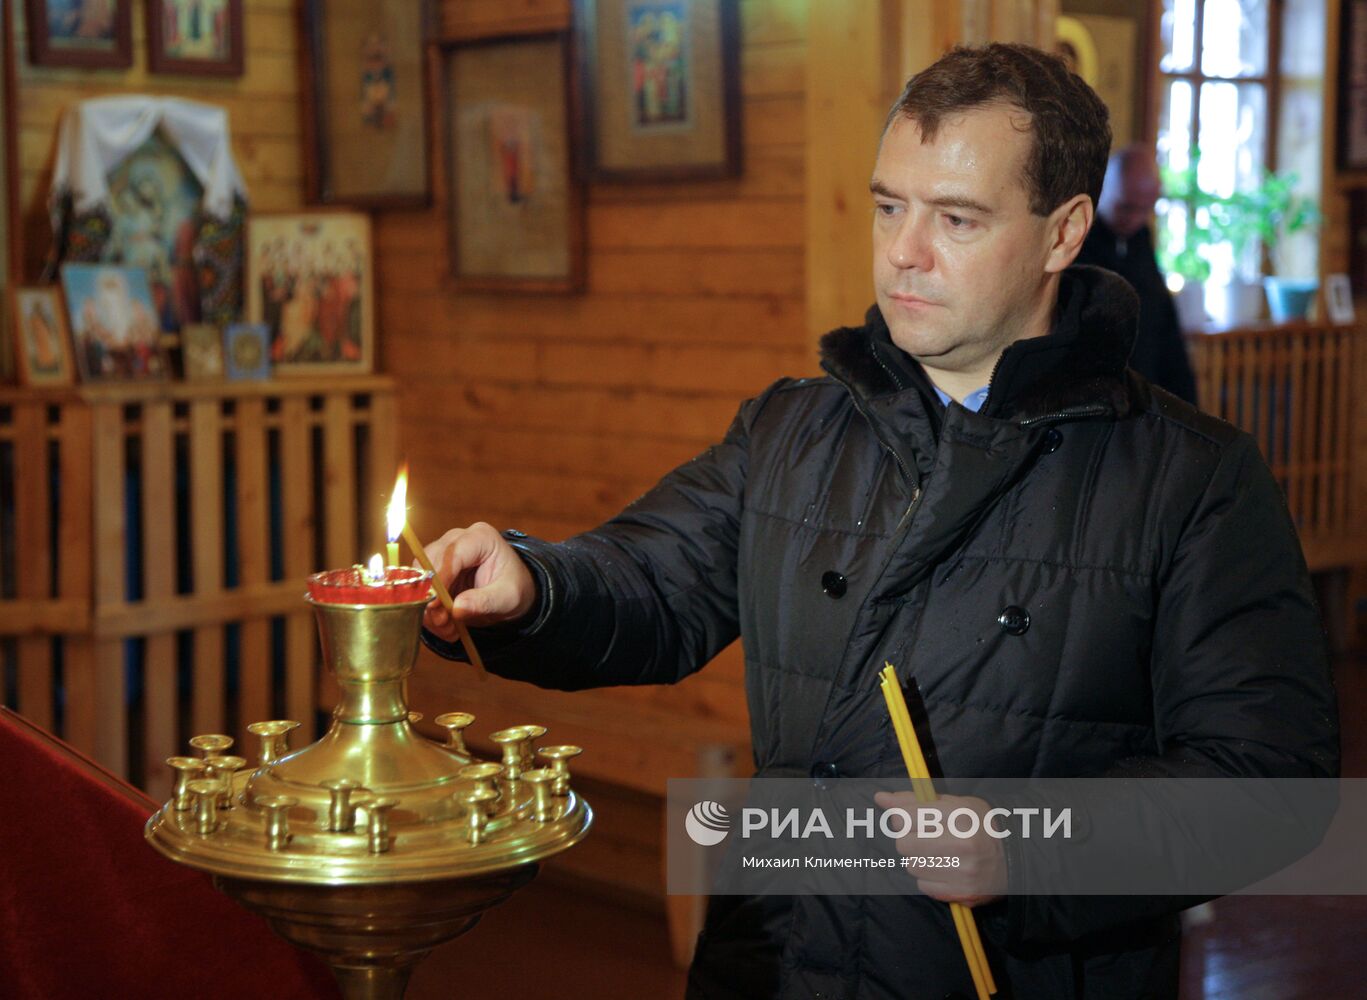 Д.Медведев побывал с рабочей поездкой на Южных Курилах